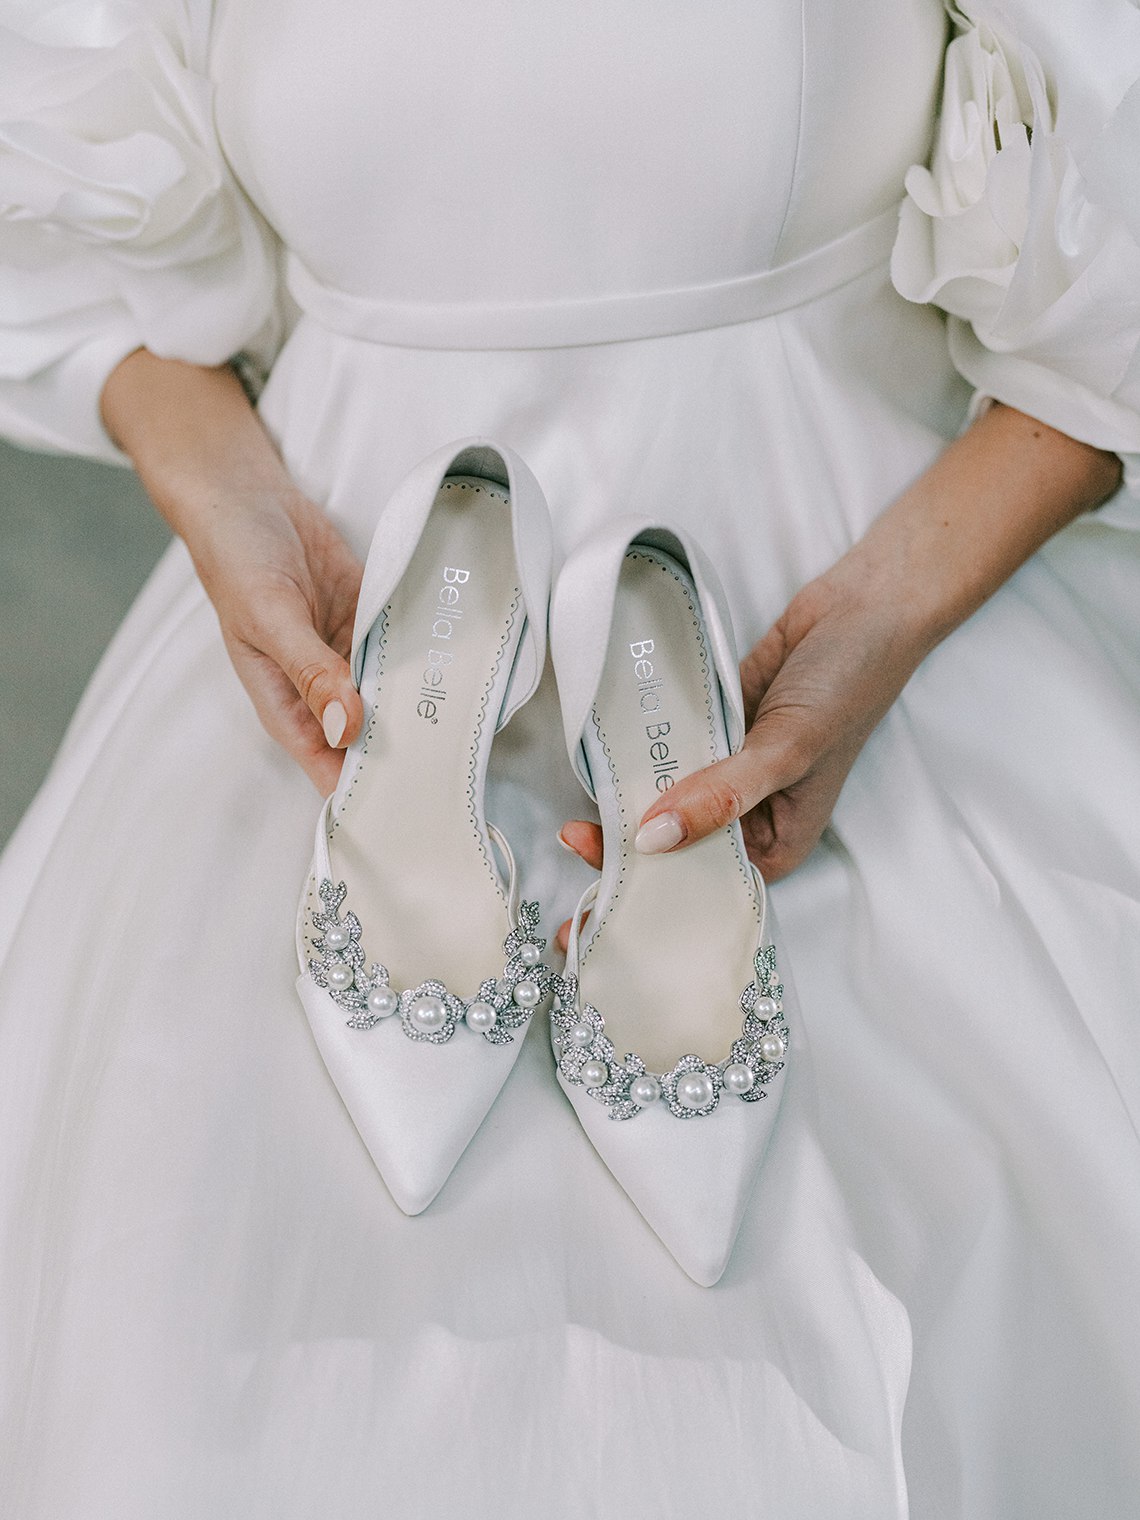 Как позировать для показа свадебной обуви